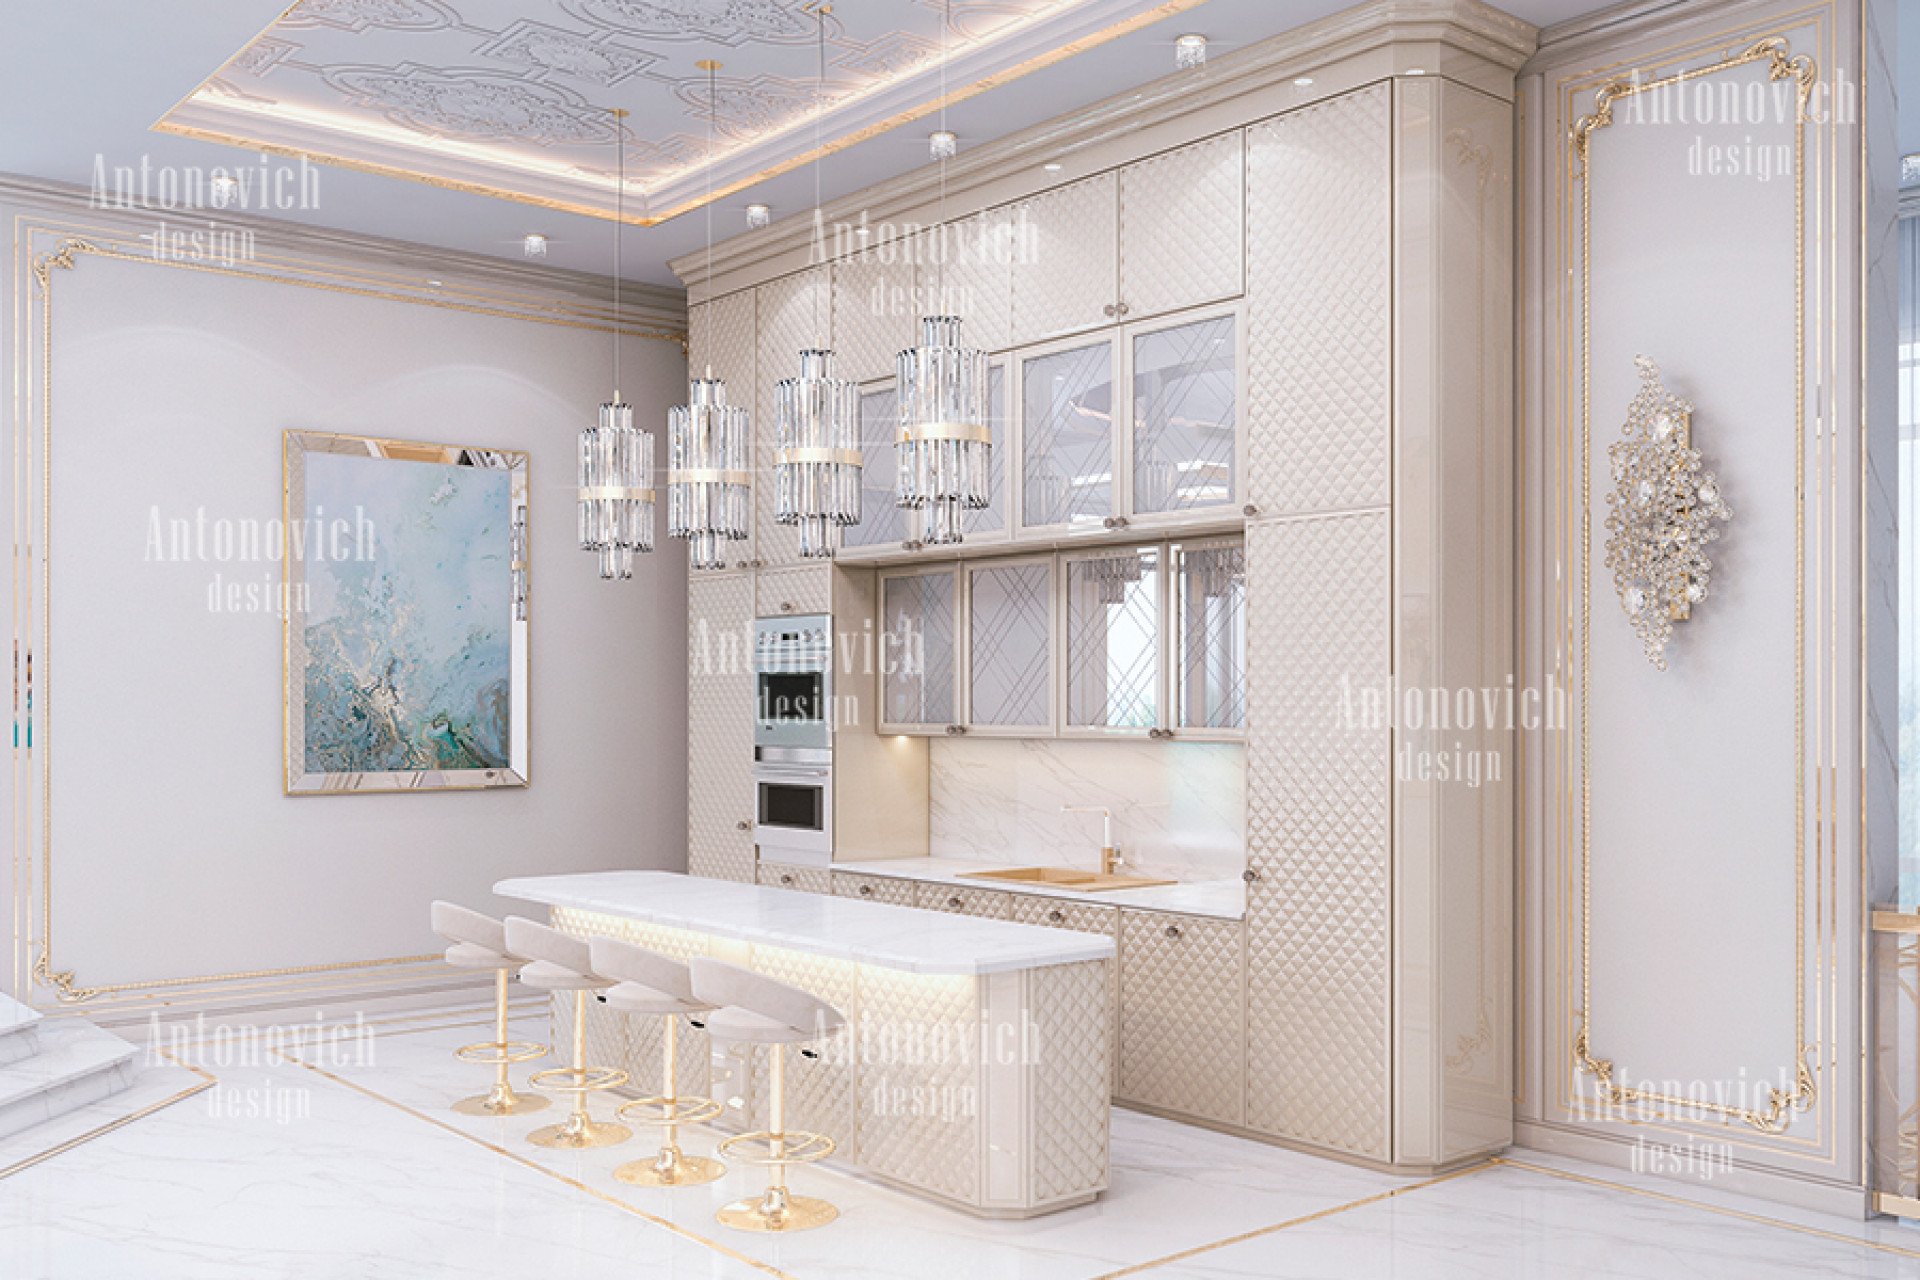 Elegant and Luxury Interior Design concepts in Miami